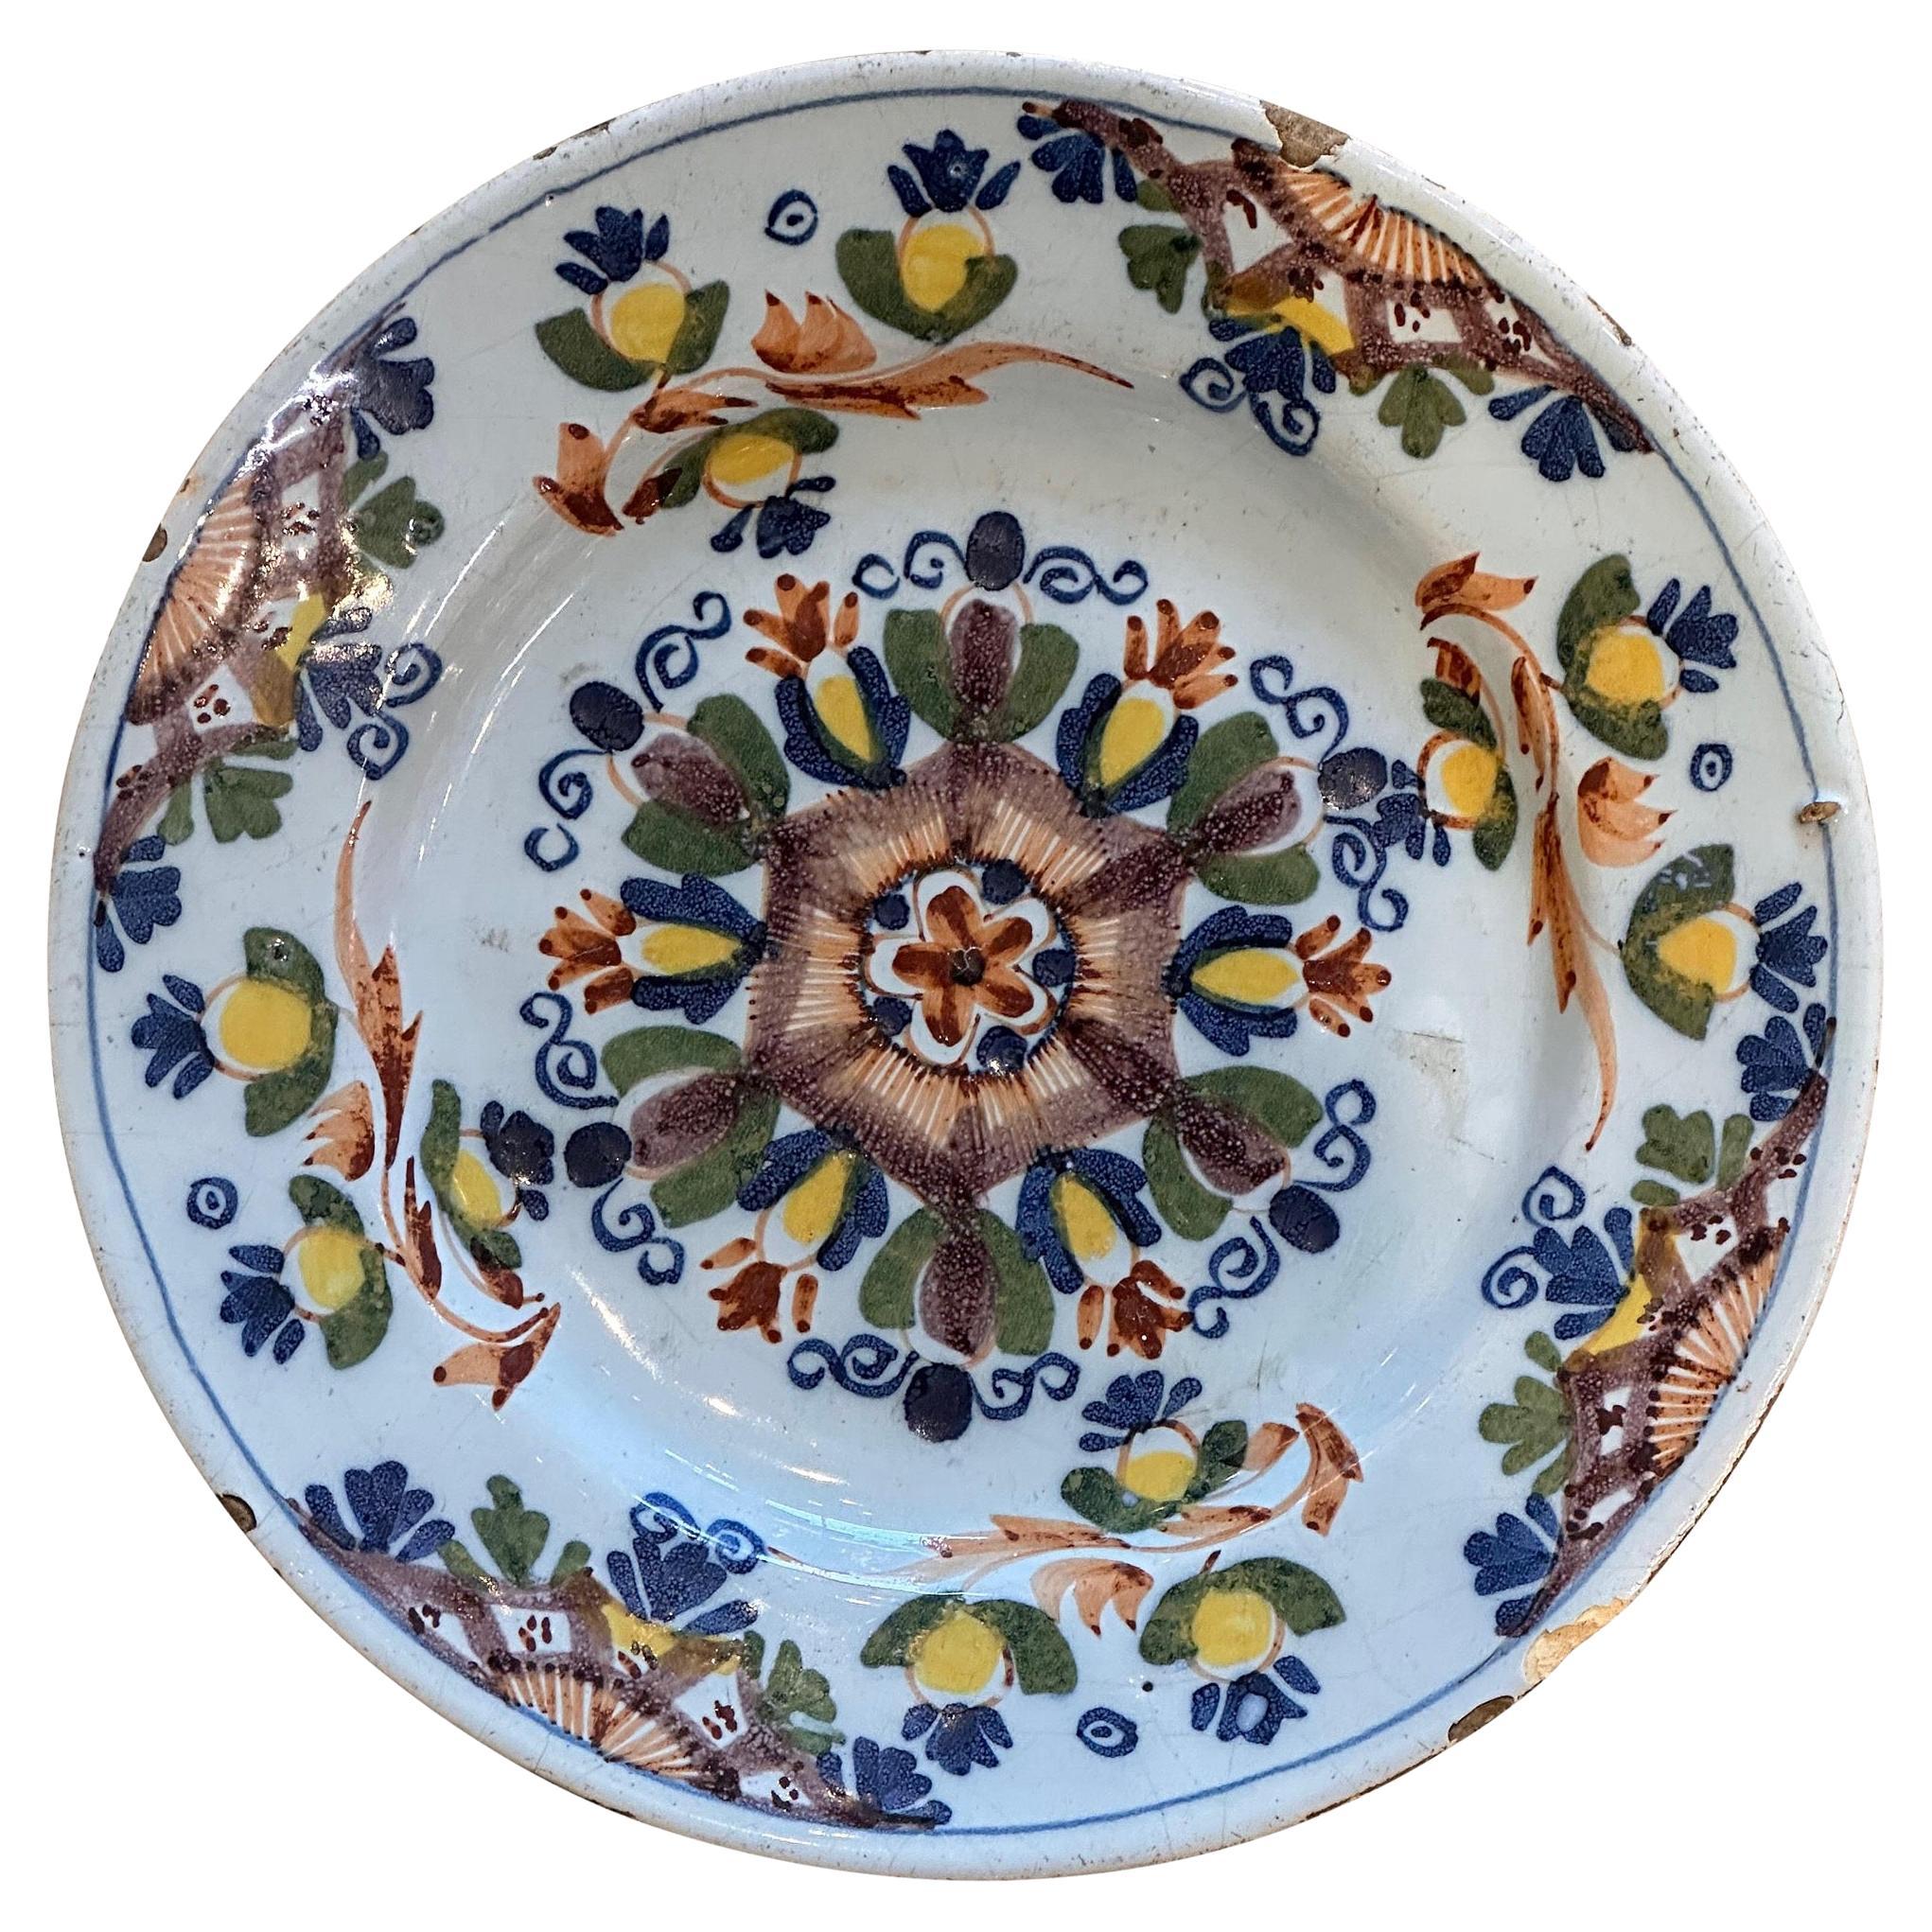 19th Century Delft Plate